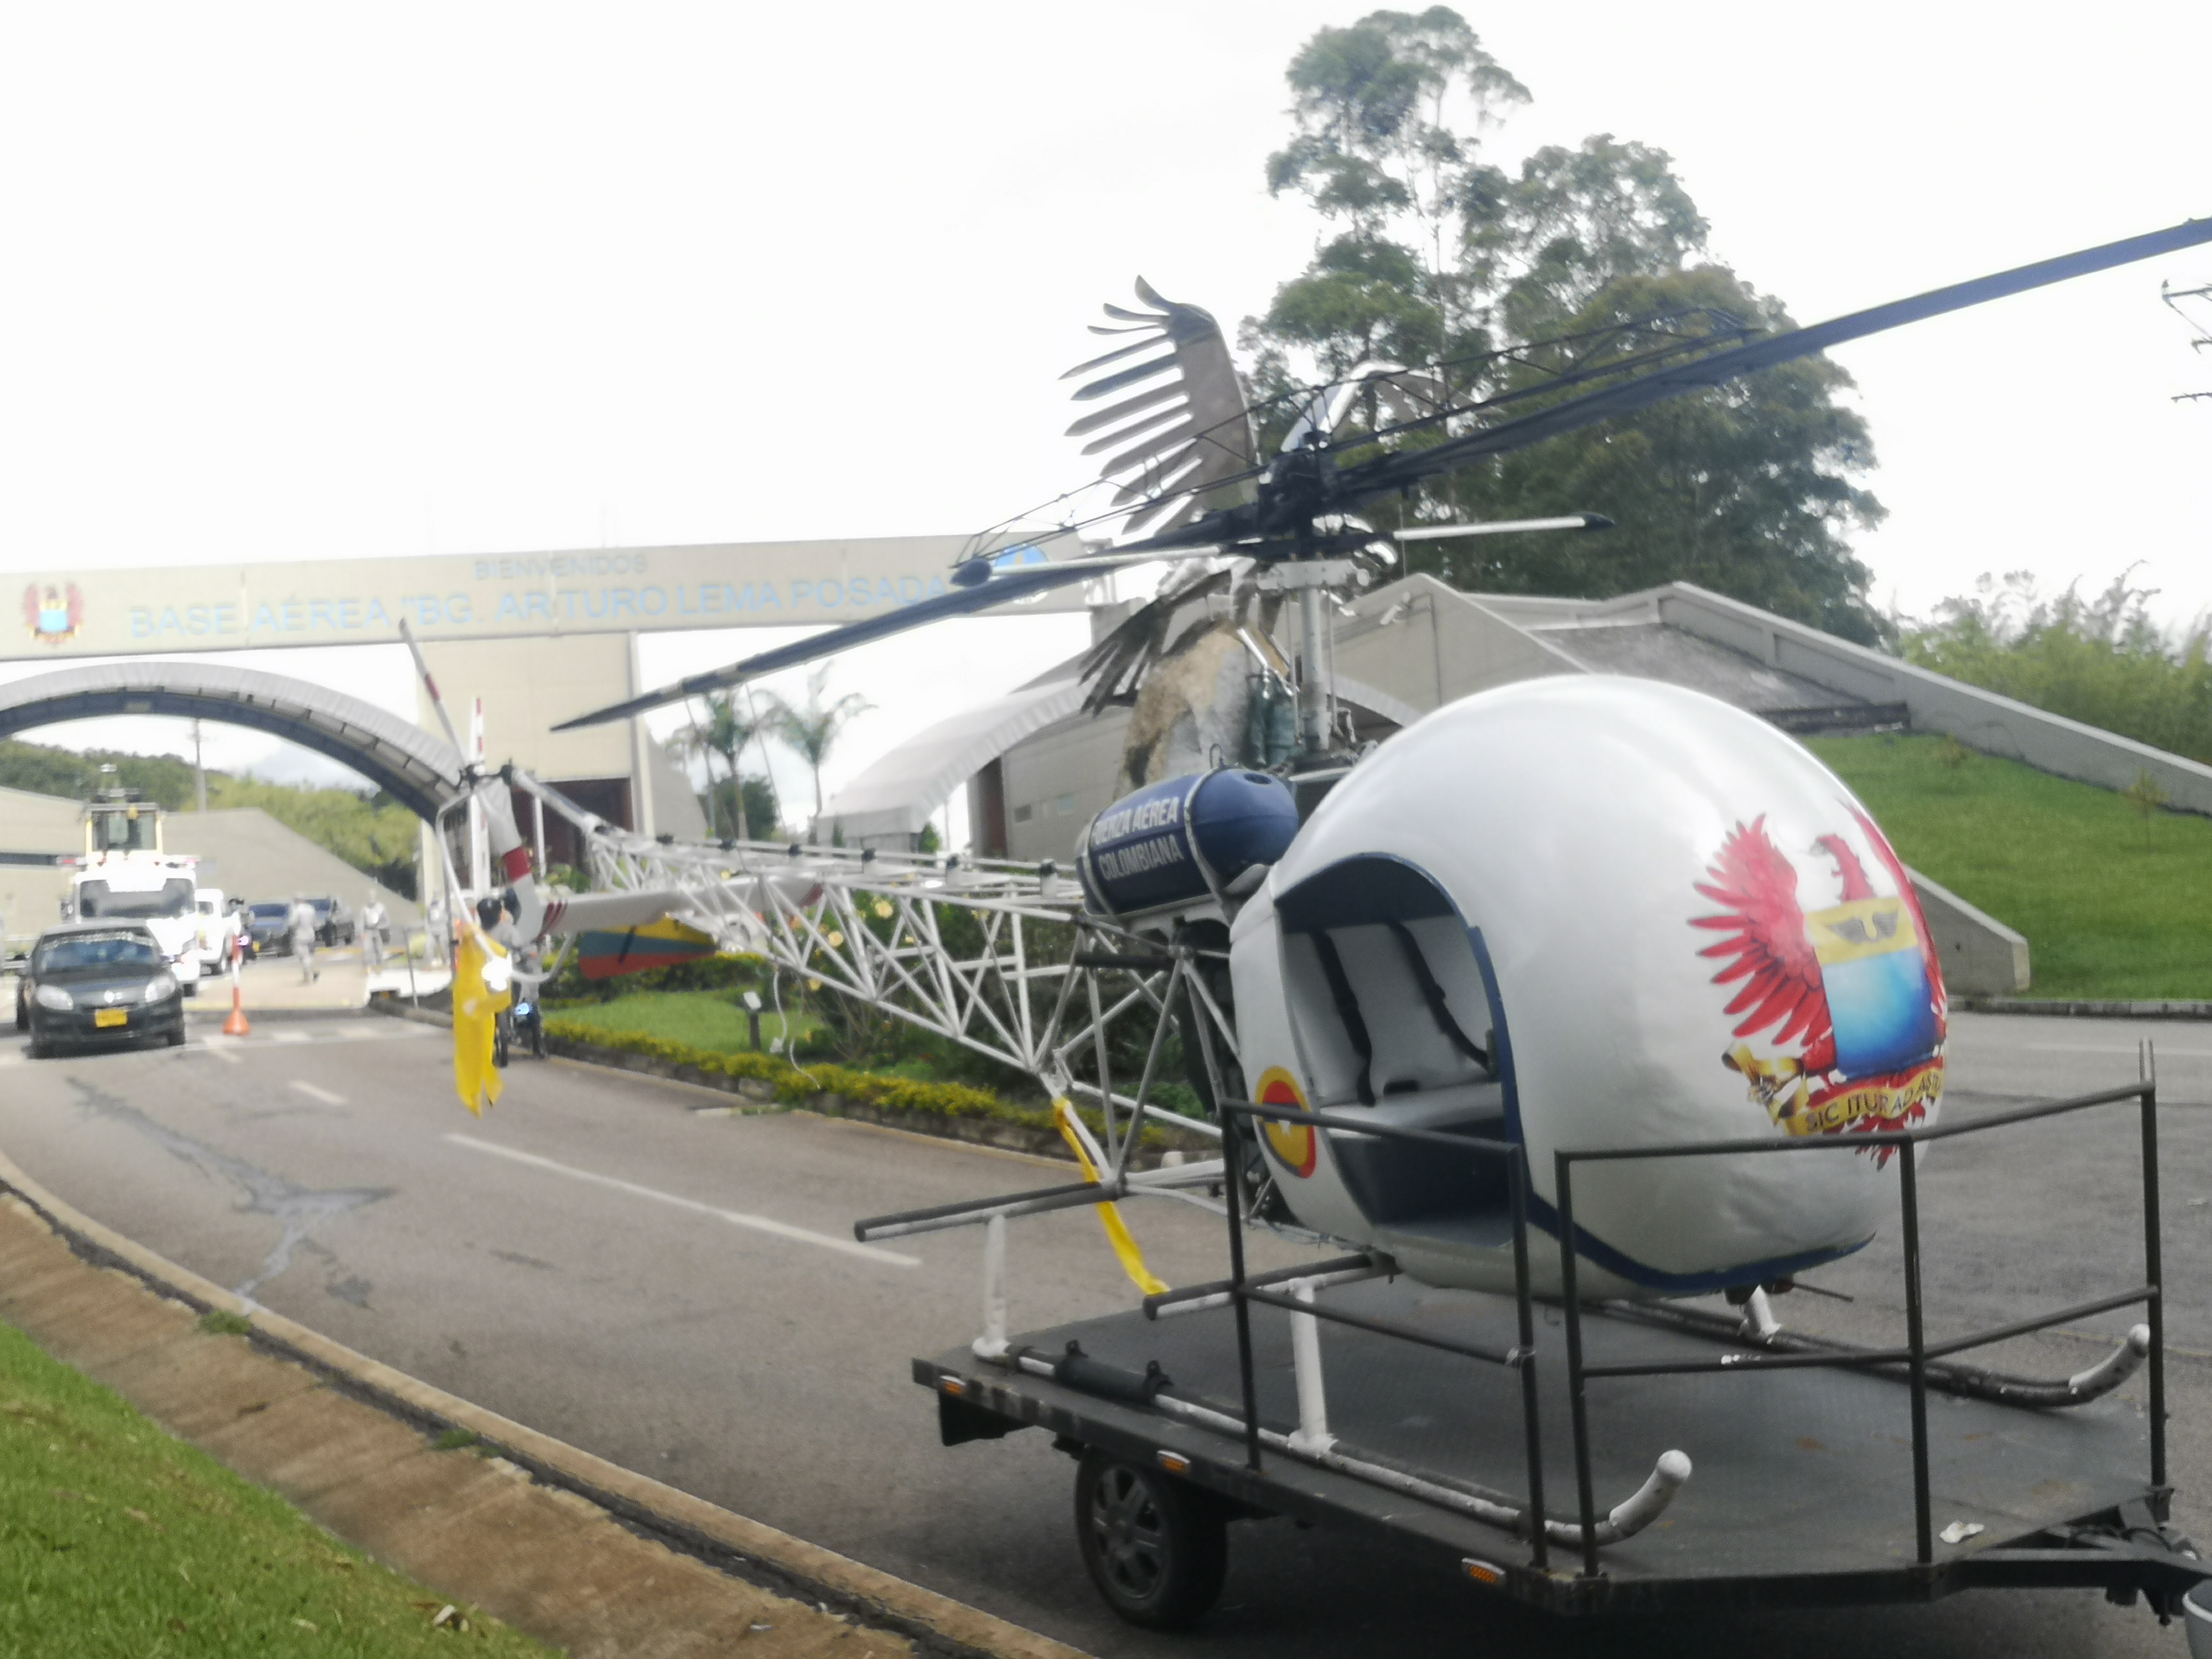 Al municipio de El Carmen de Viboral llegaron aeronaves insignia de la Fuerza Aérea Colombiana 